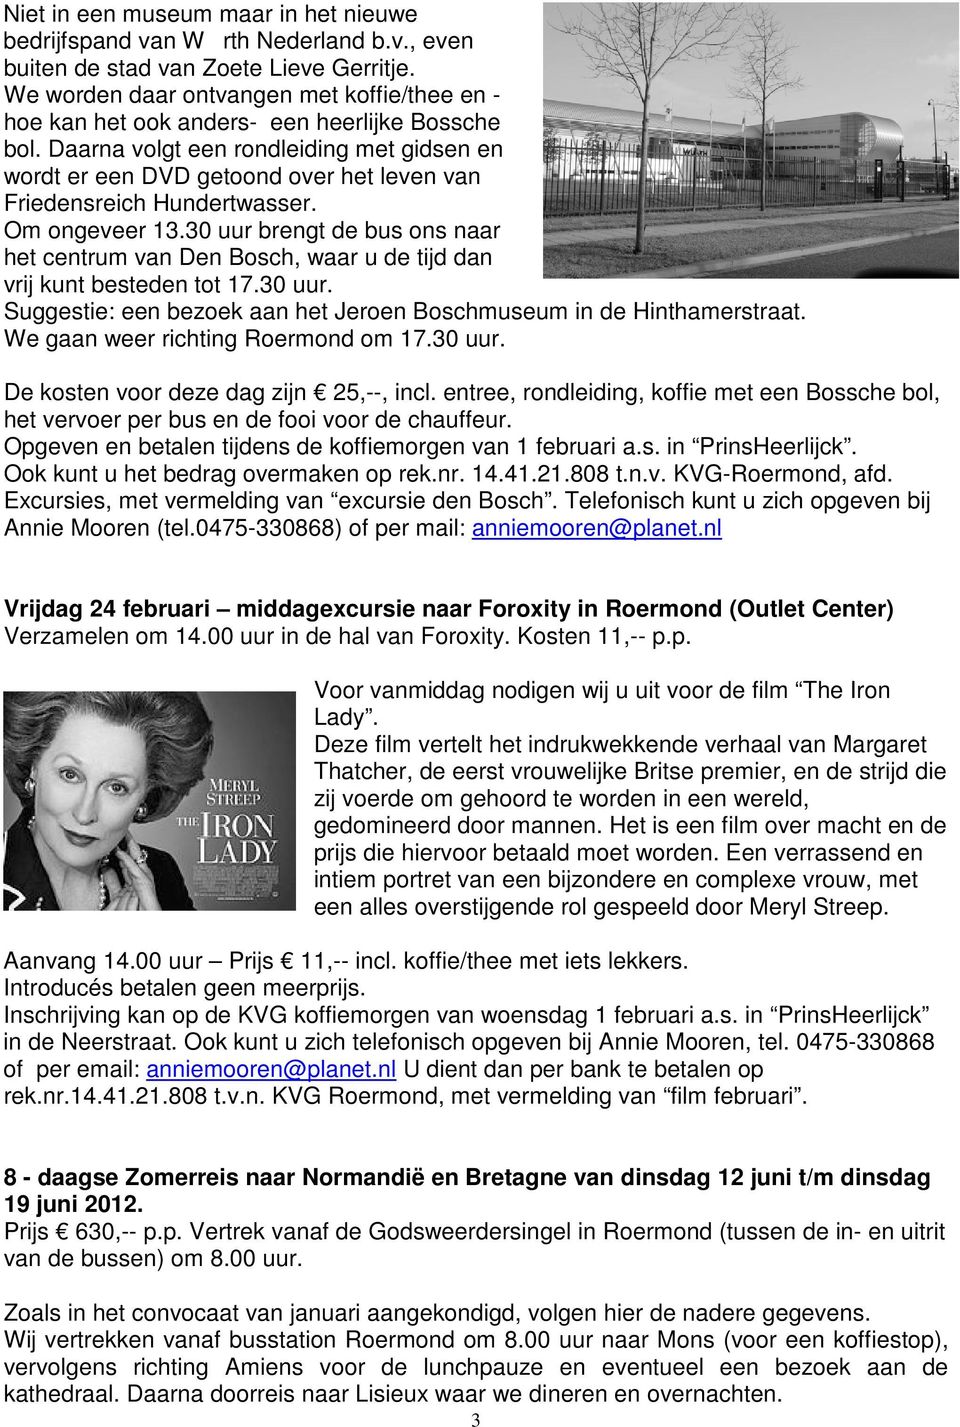 Daarna volgt een rondleiding met gidsen en wordt er een DVD getoond over het leven van Friedensreich Hundertwasser. Om ongeveer 13.